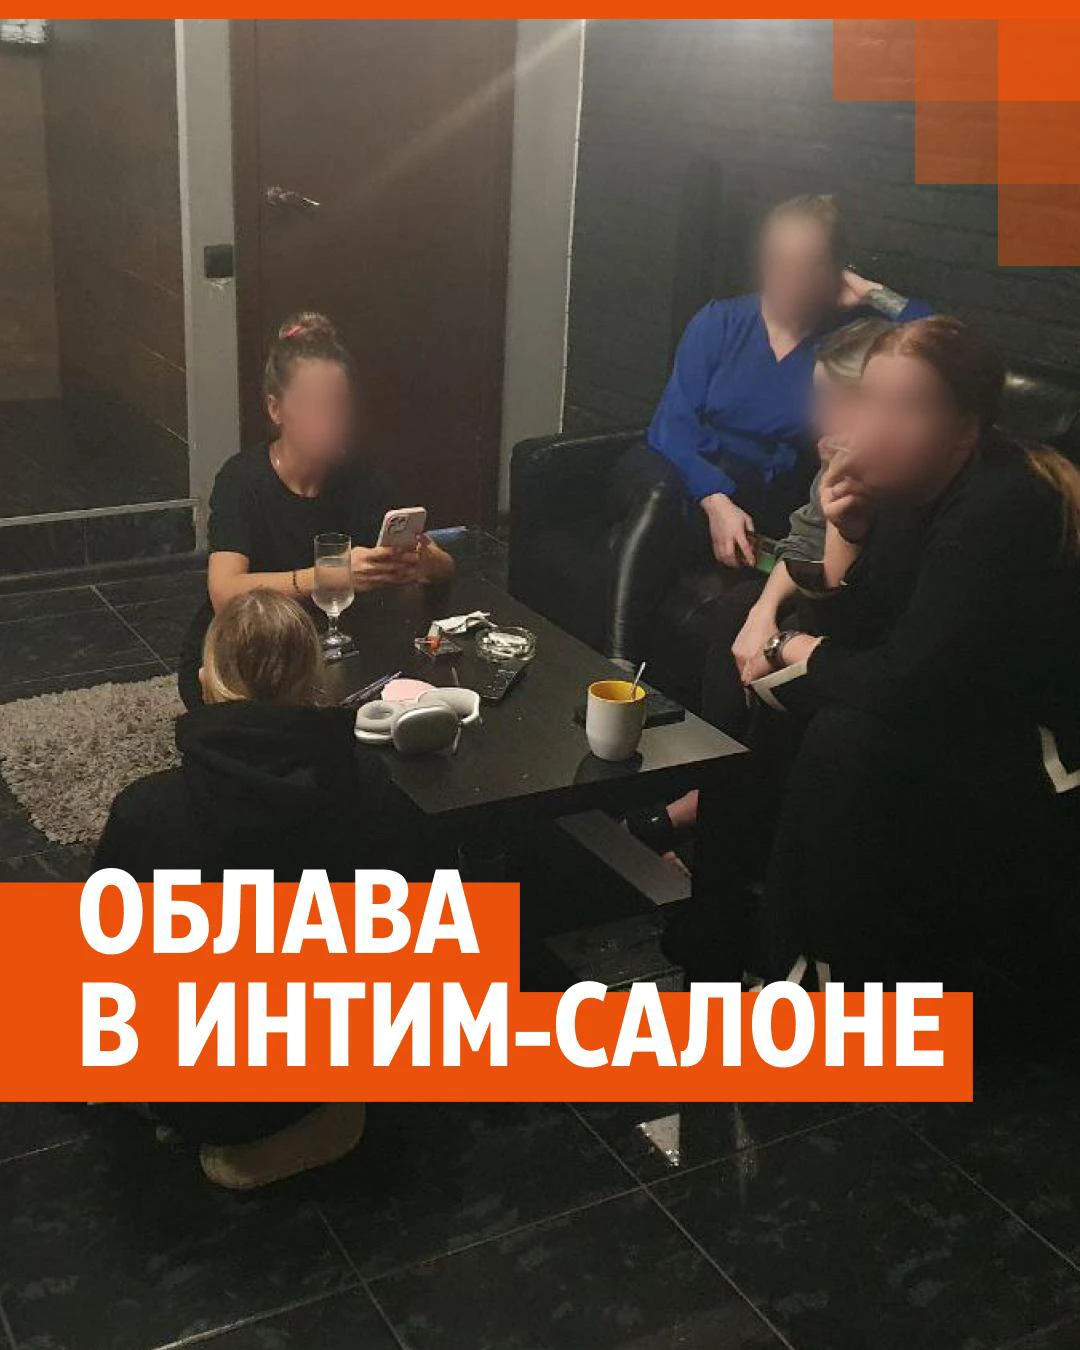 Массаж эротический - проститутки и индвидуалки Екатеринбурга